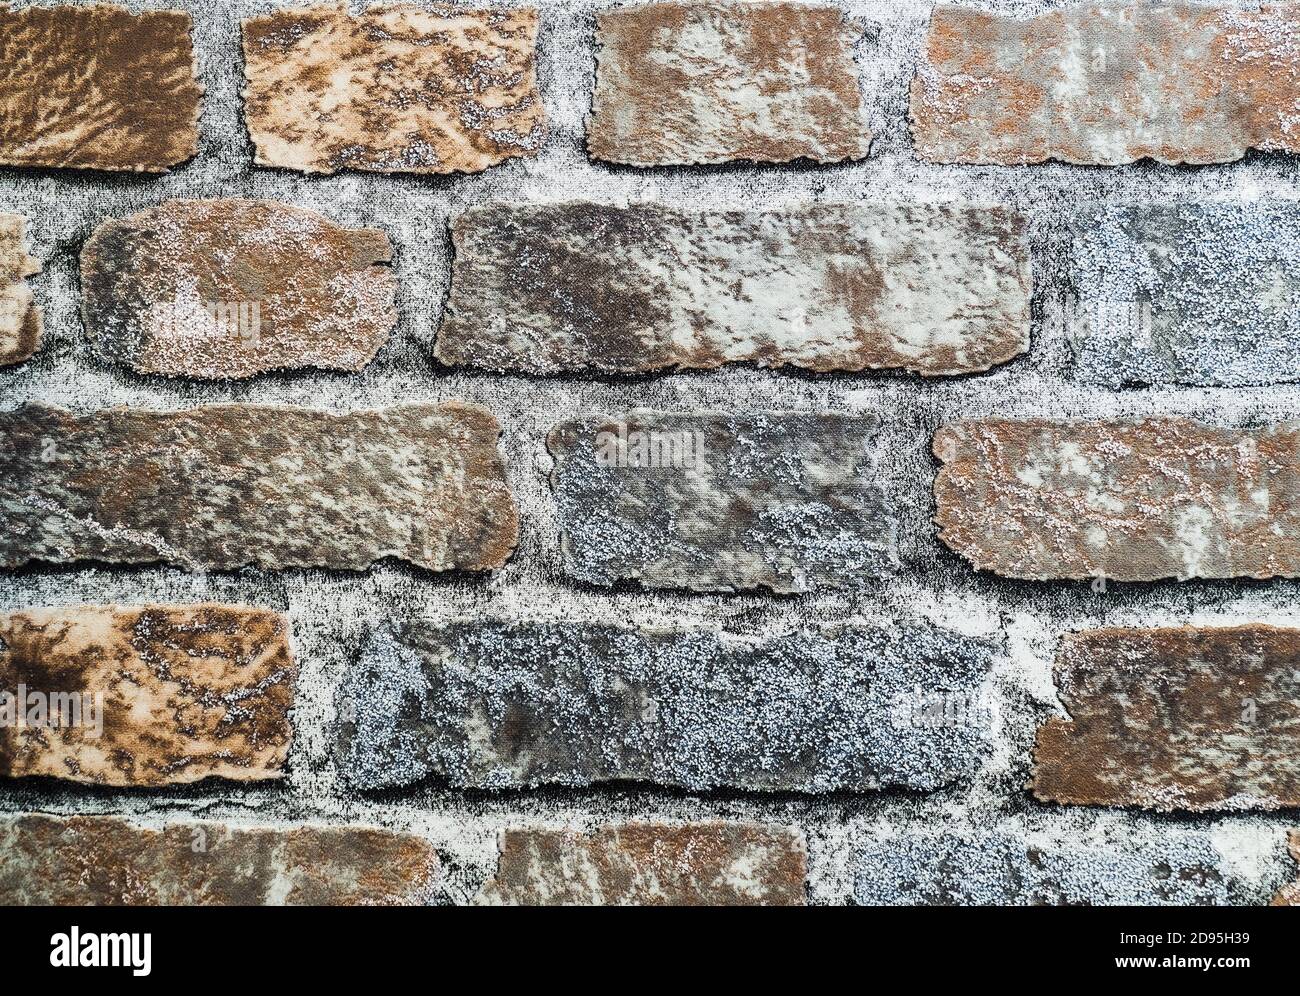 Marmor Grunge Zement Wand Textur Hintergrund. Notleidende Overlay-Textur der verrosteten geschälten Wand Stockfoto